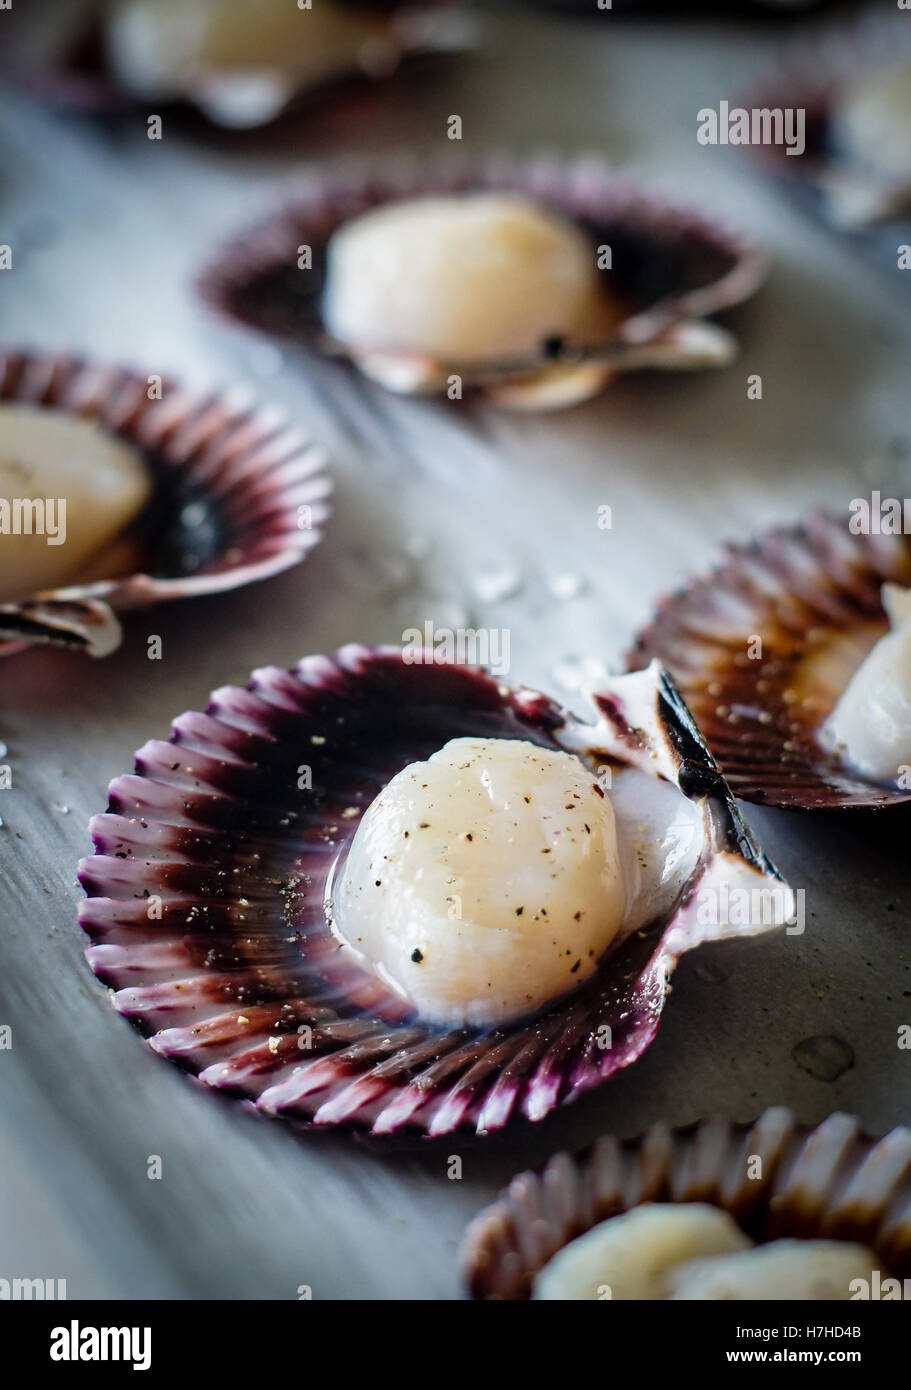 Meeresfrüchte Jakobsmuscheln, gewürzt mit Salz und Pfeffer fertig gekocht werden. Bewusste Fokus auf Vordergrund Jakobsmuschel und geringe Schärfentiefe f Stockfoto